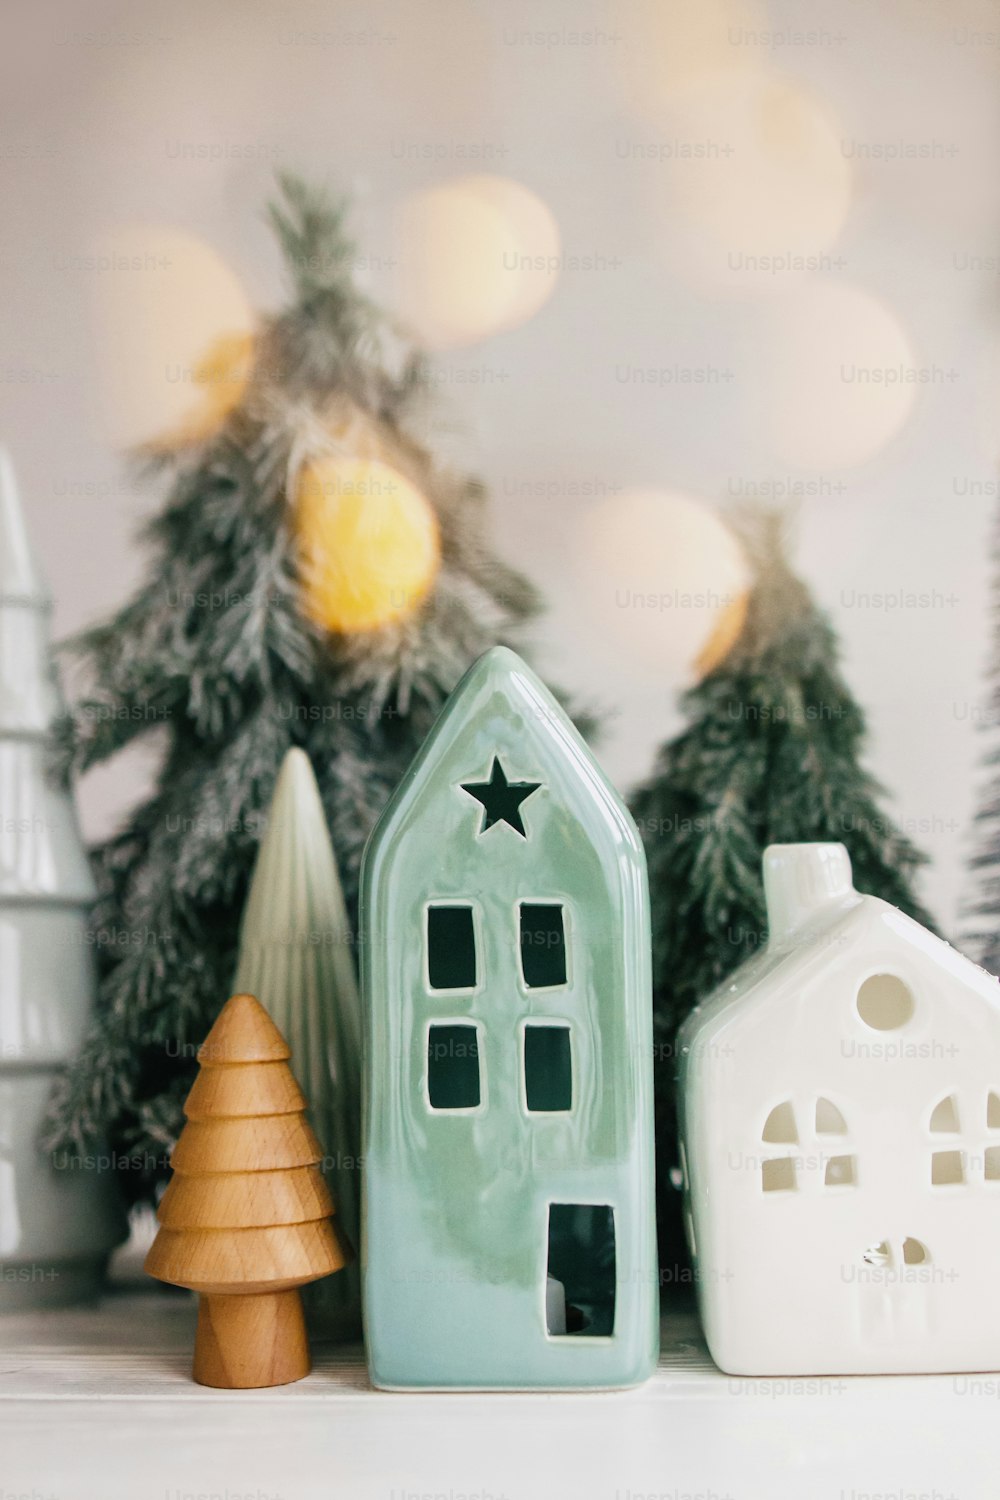 Weihnachtsszene, Miniatur-Feriendorf. Weihnachtsbeleuchtung, kleine Keramikhäuser, hölzerne und schneebedeckte Tannen auf weißem Hintergrund. Festliche moderne Dekorationen auf dem Tisch. Frohe Weihnachten